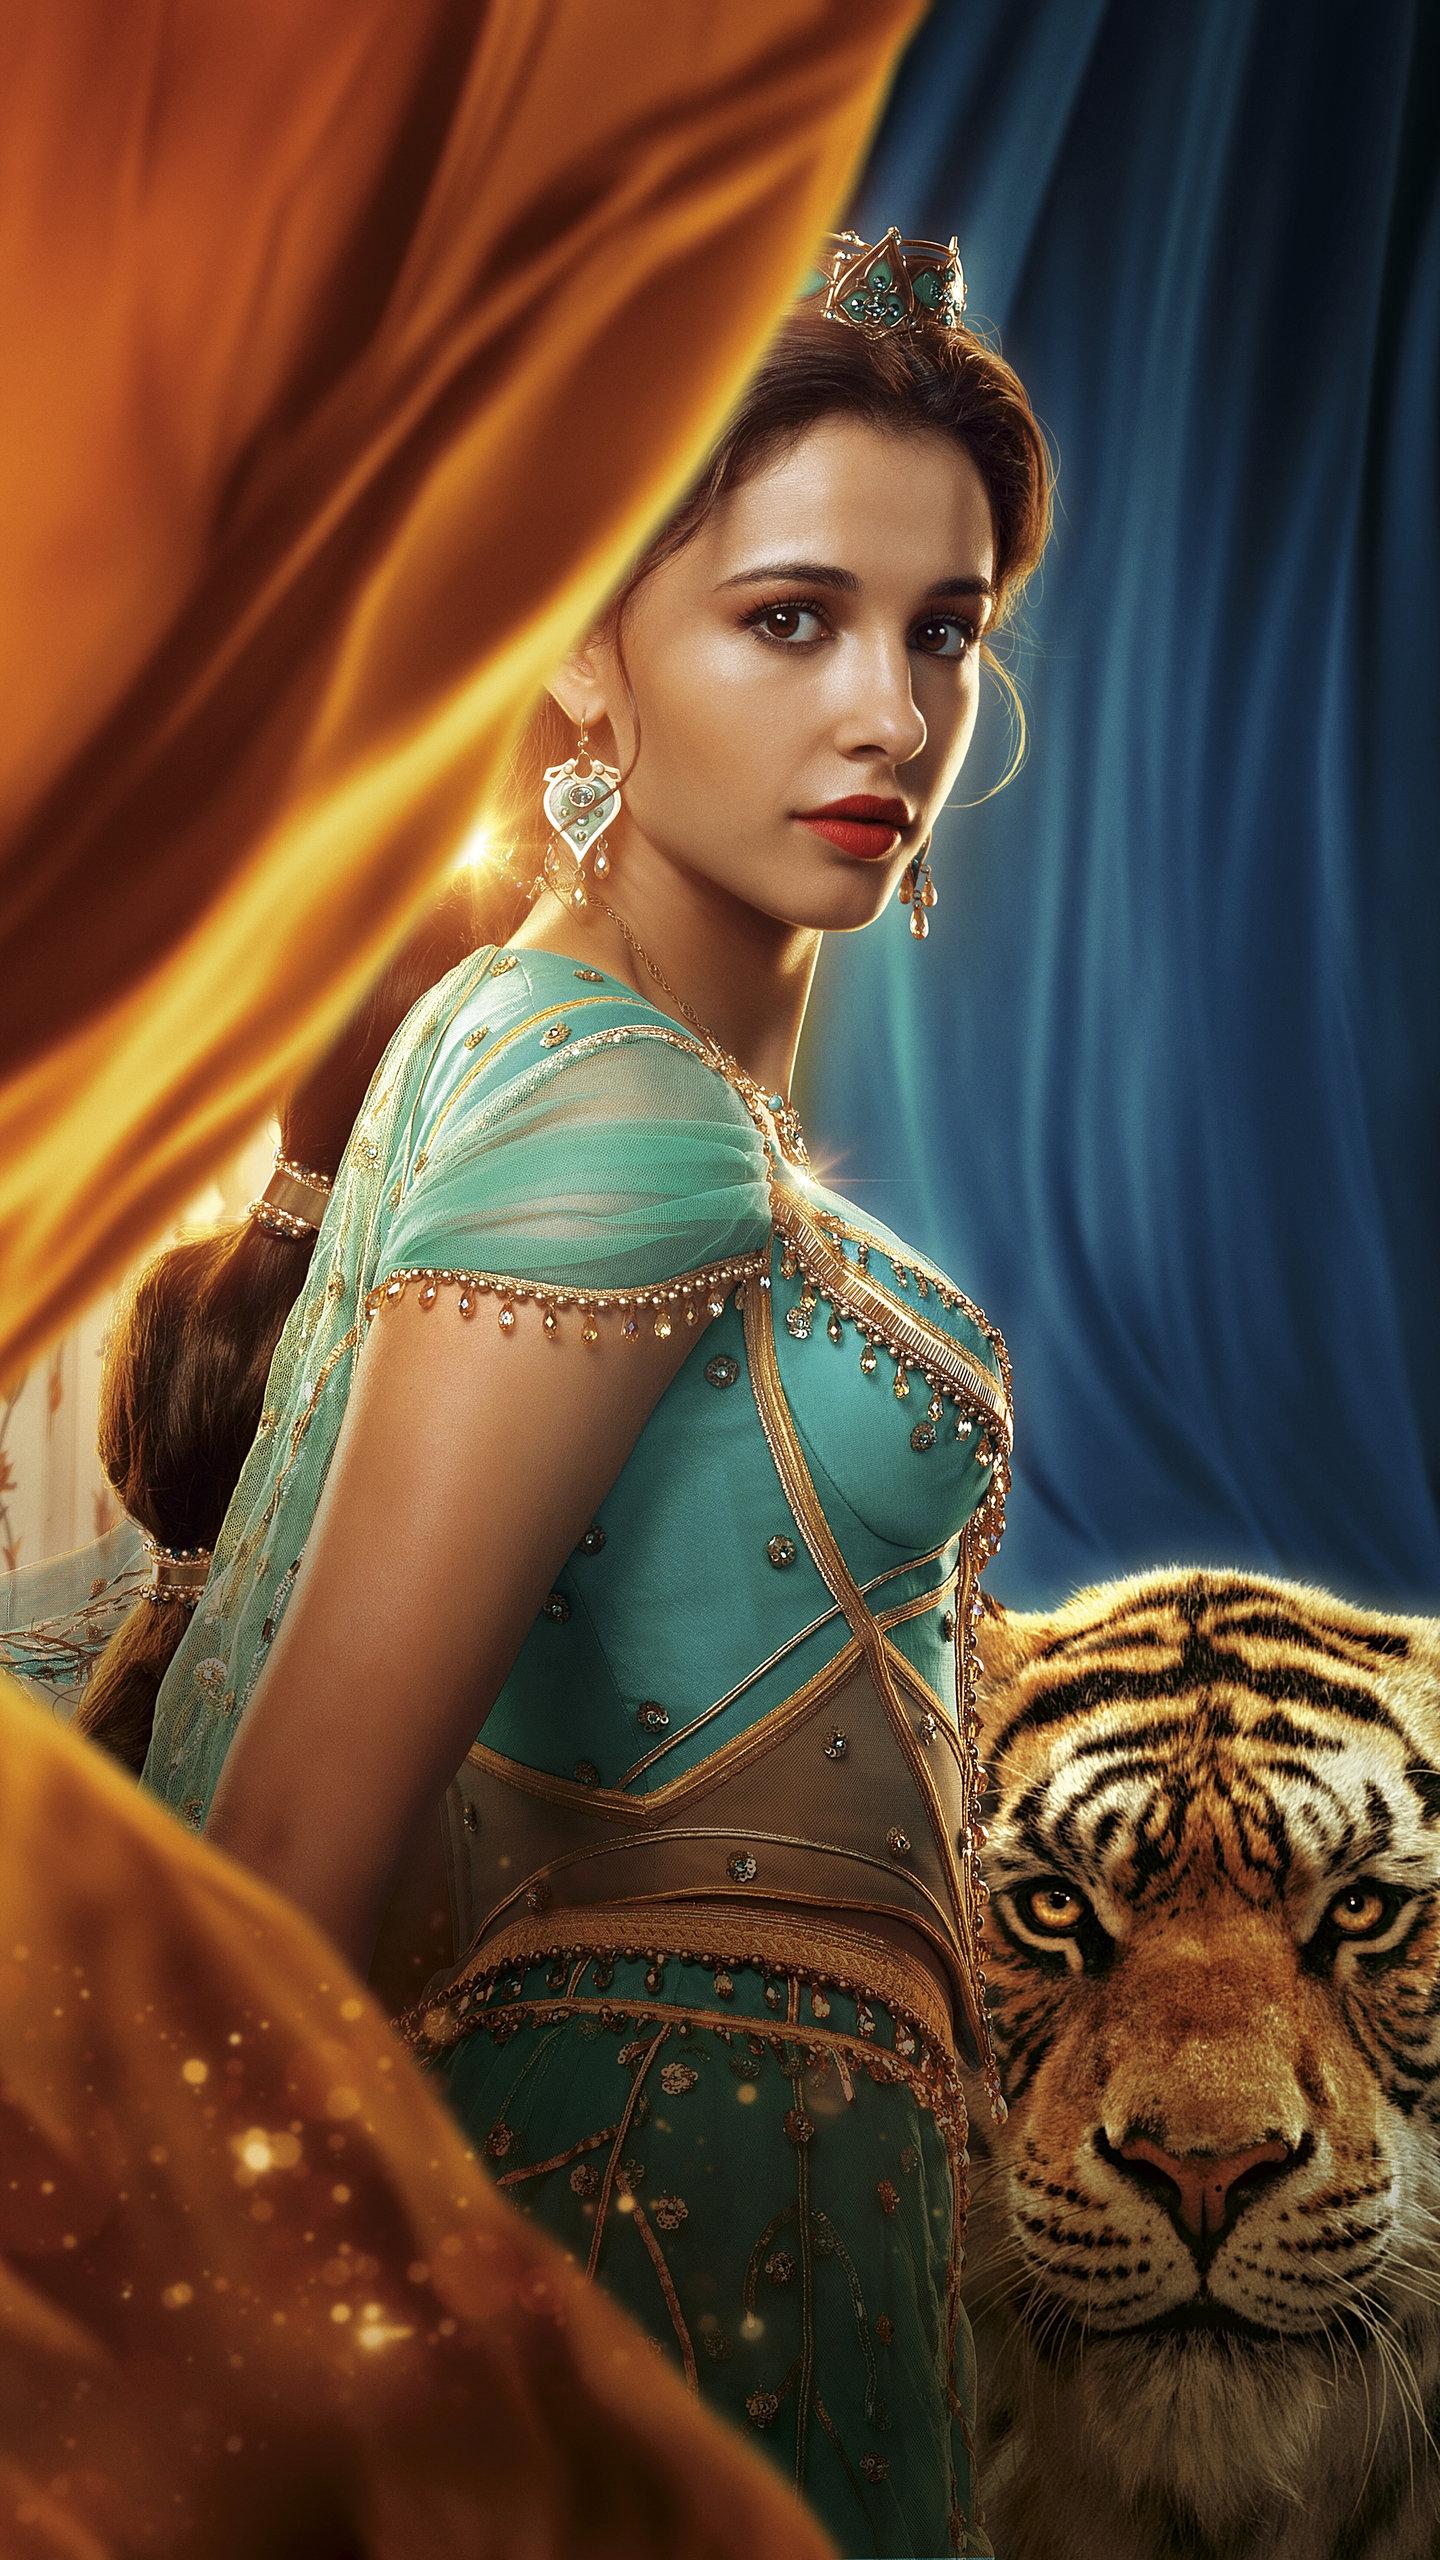 Aladdin 2019 Jasmine Wallpaper